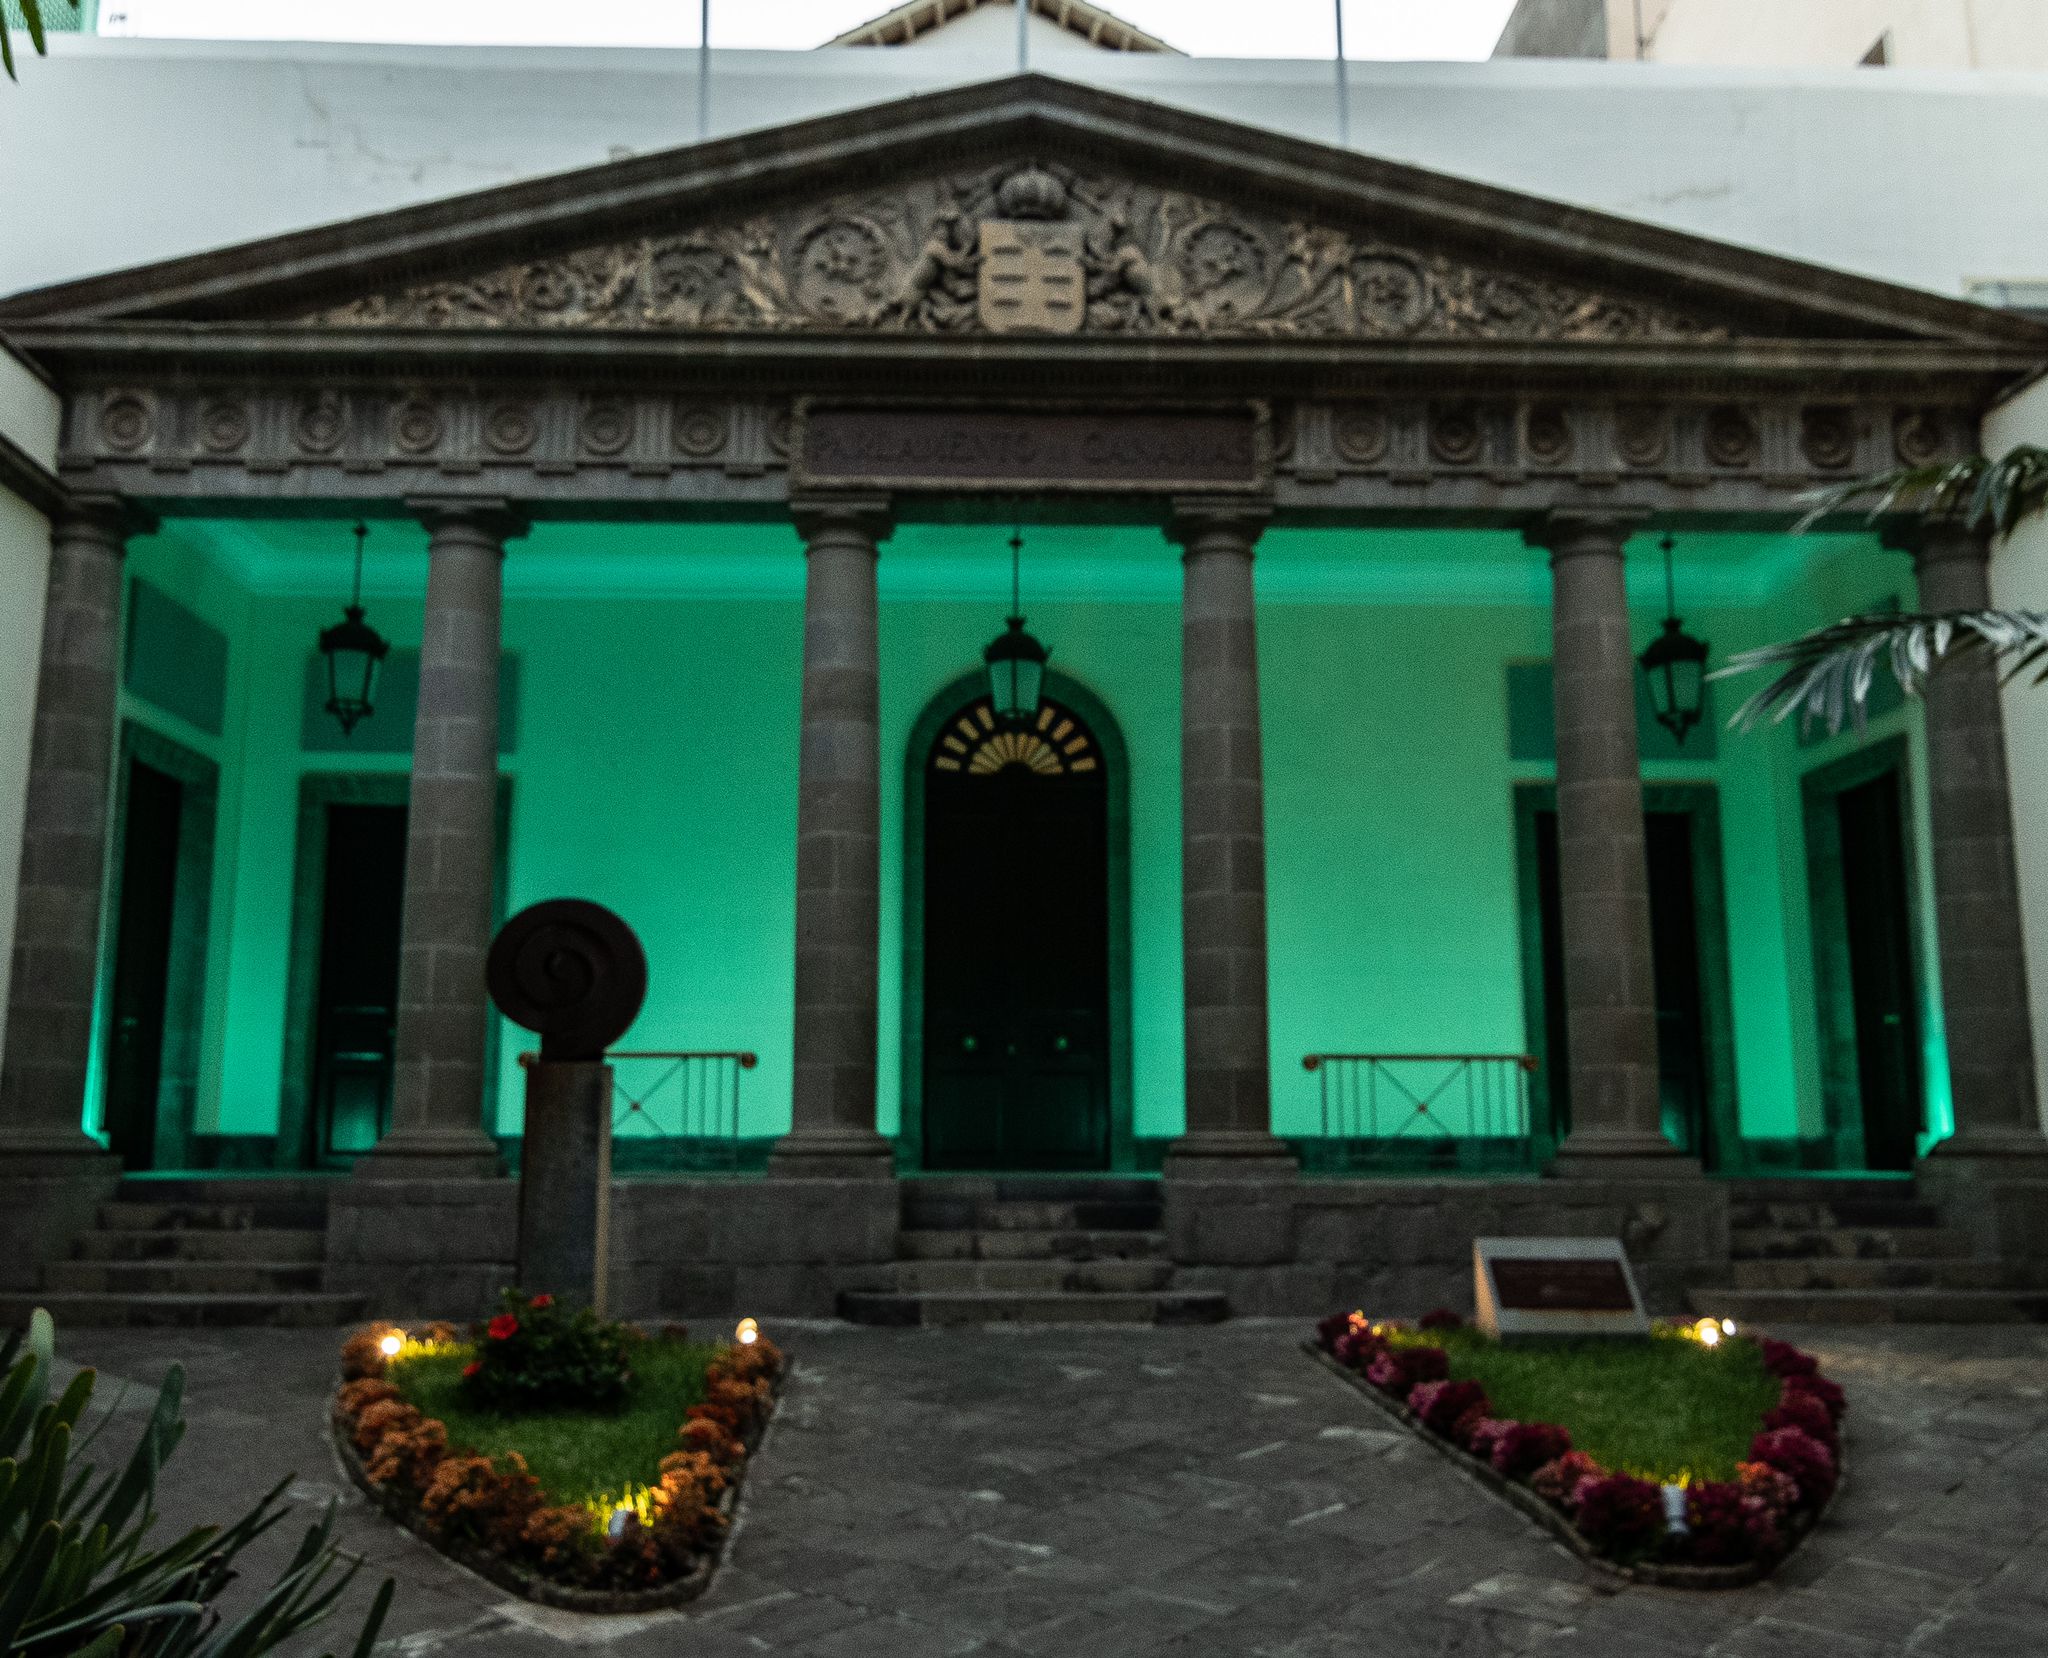 La fachada del Parlamento de Canarias iluminada de turquesa